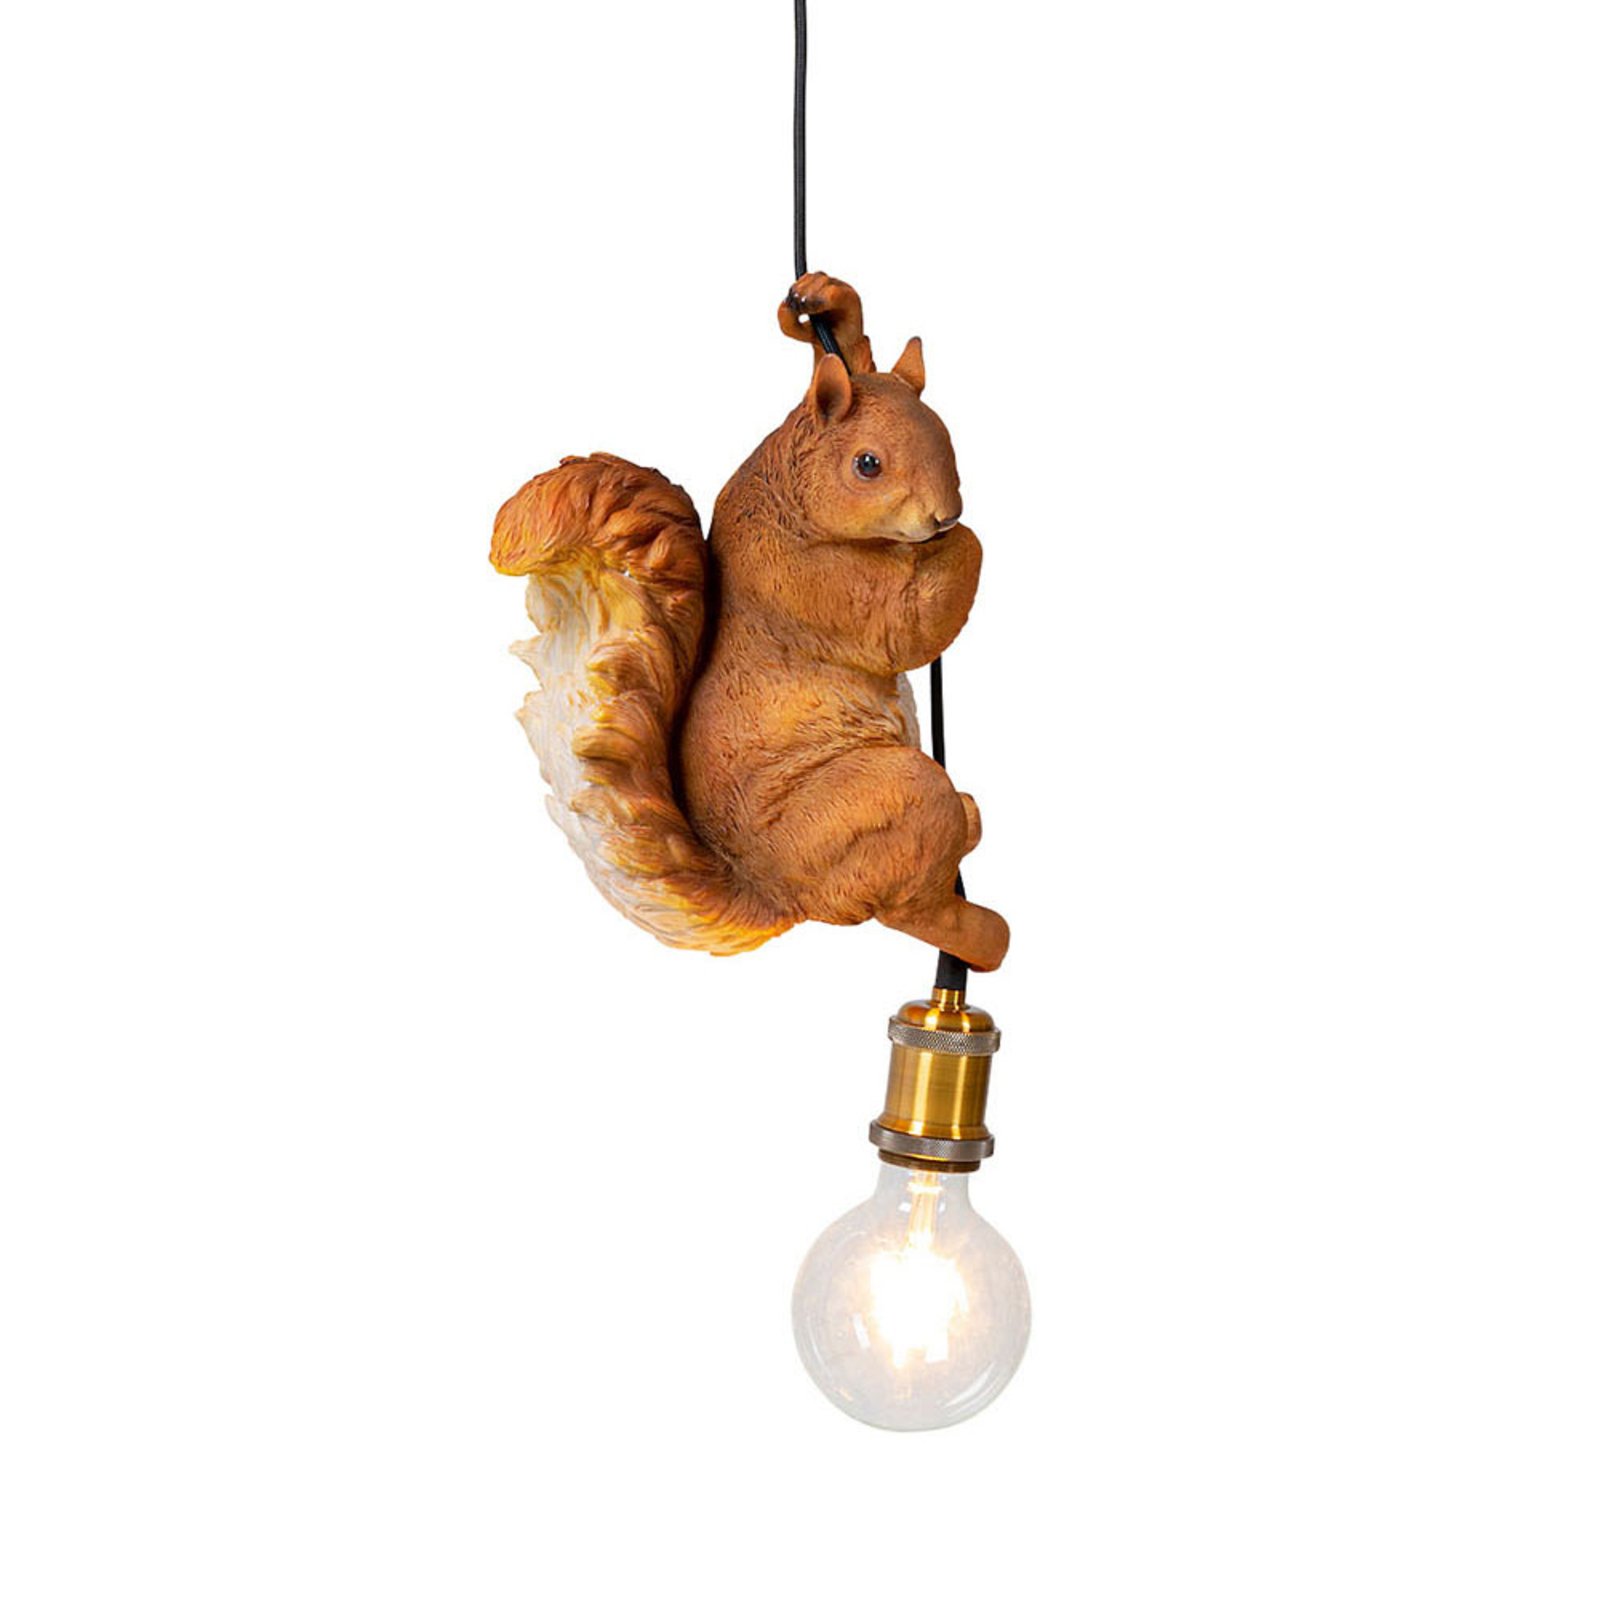 KARE Squirrel hanglamp met eekhoornmodel